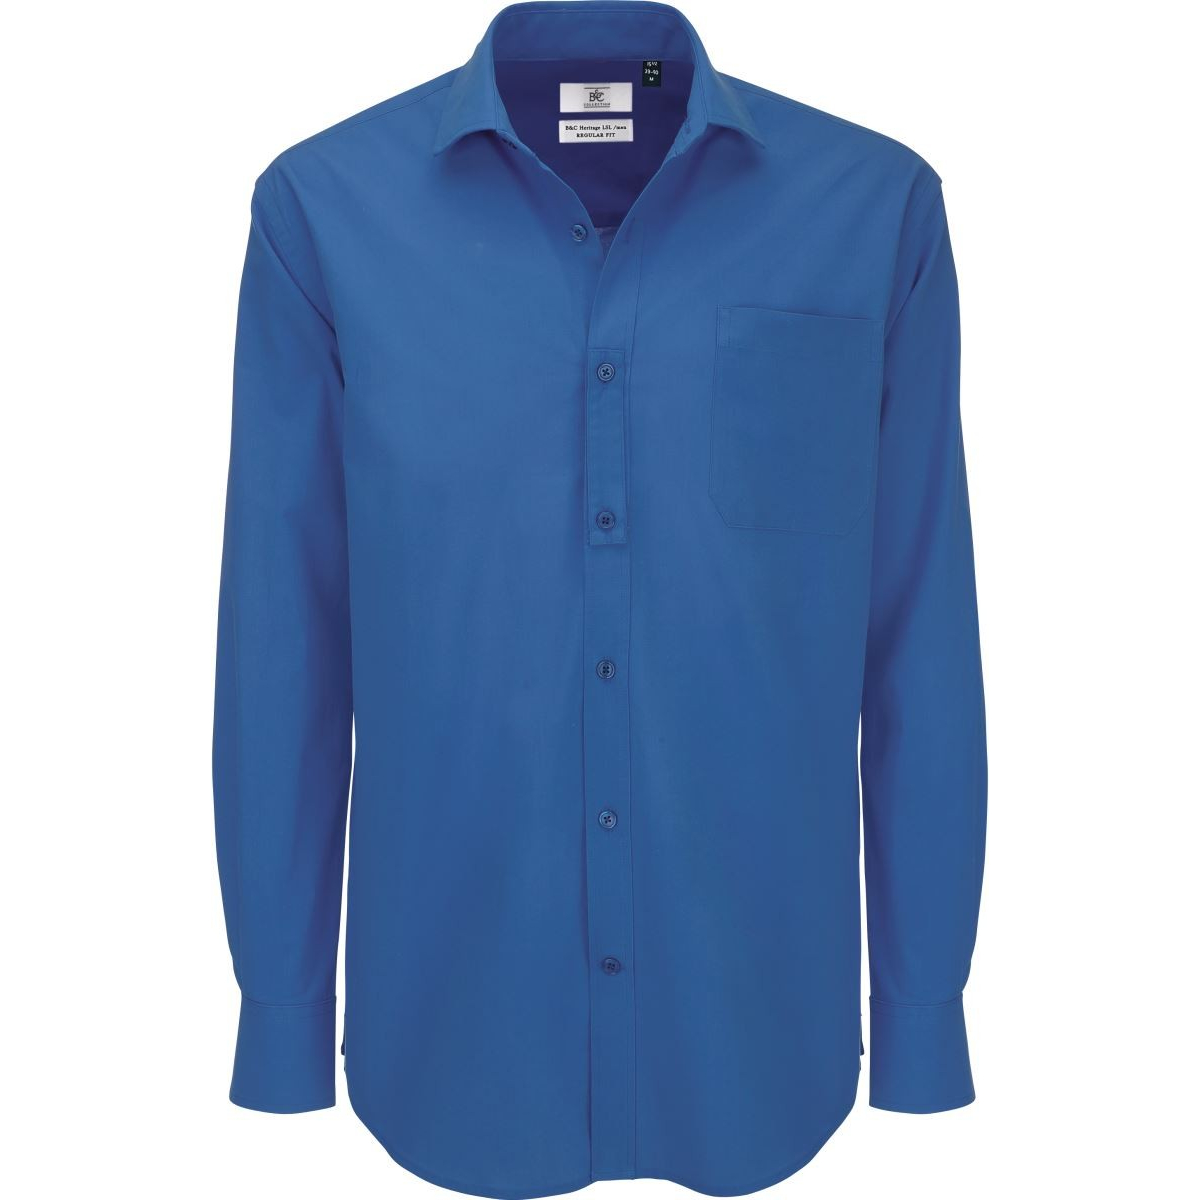 Pánská popelínová košile B&C Heritage s dlouhým rukávem - modrá, 3XL